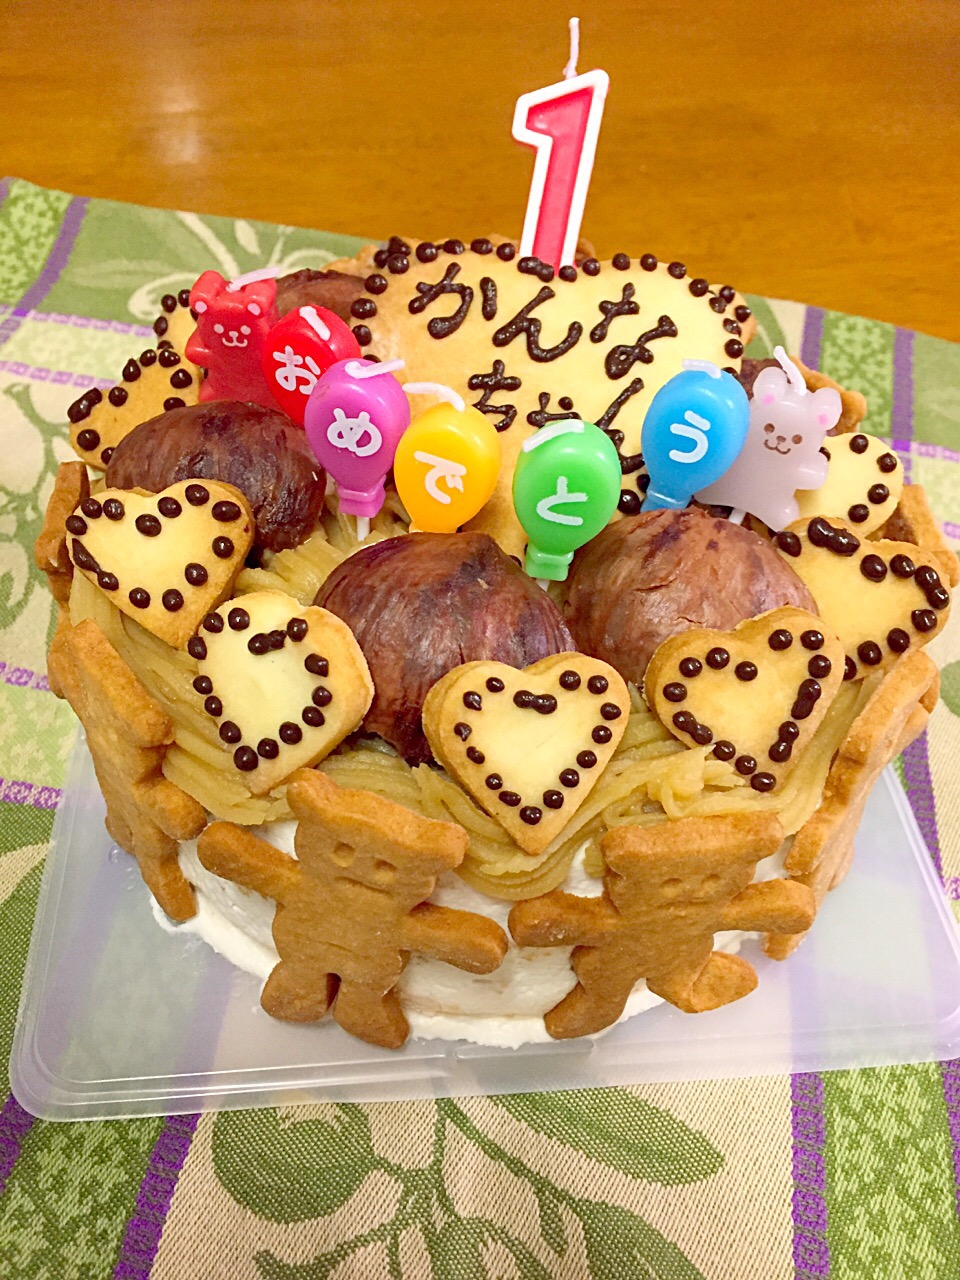 かんなちゃん1歳の誕生日ケーキ?